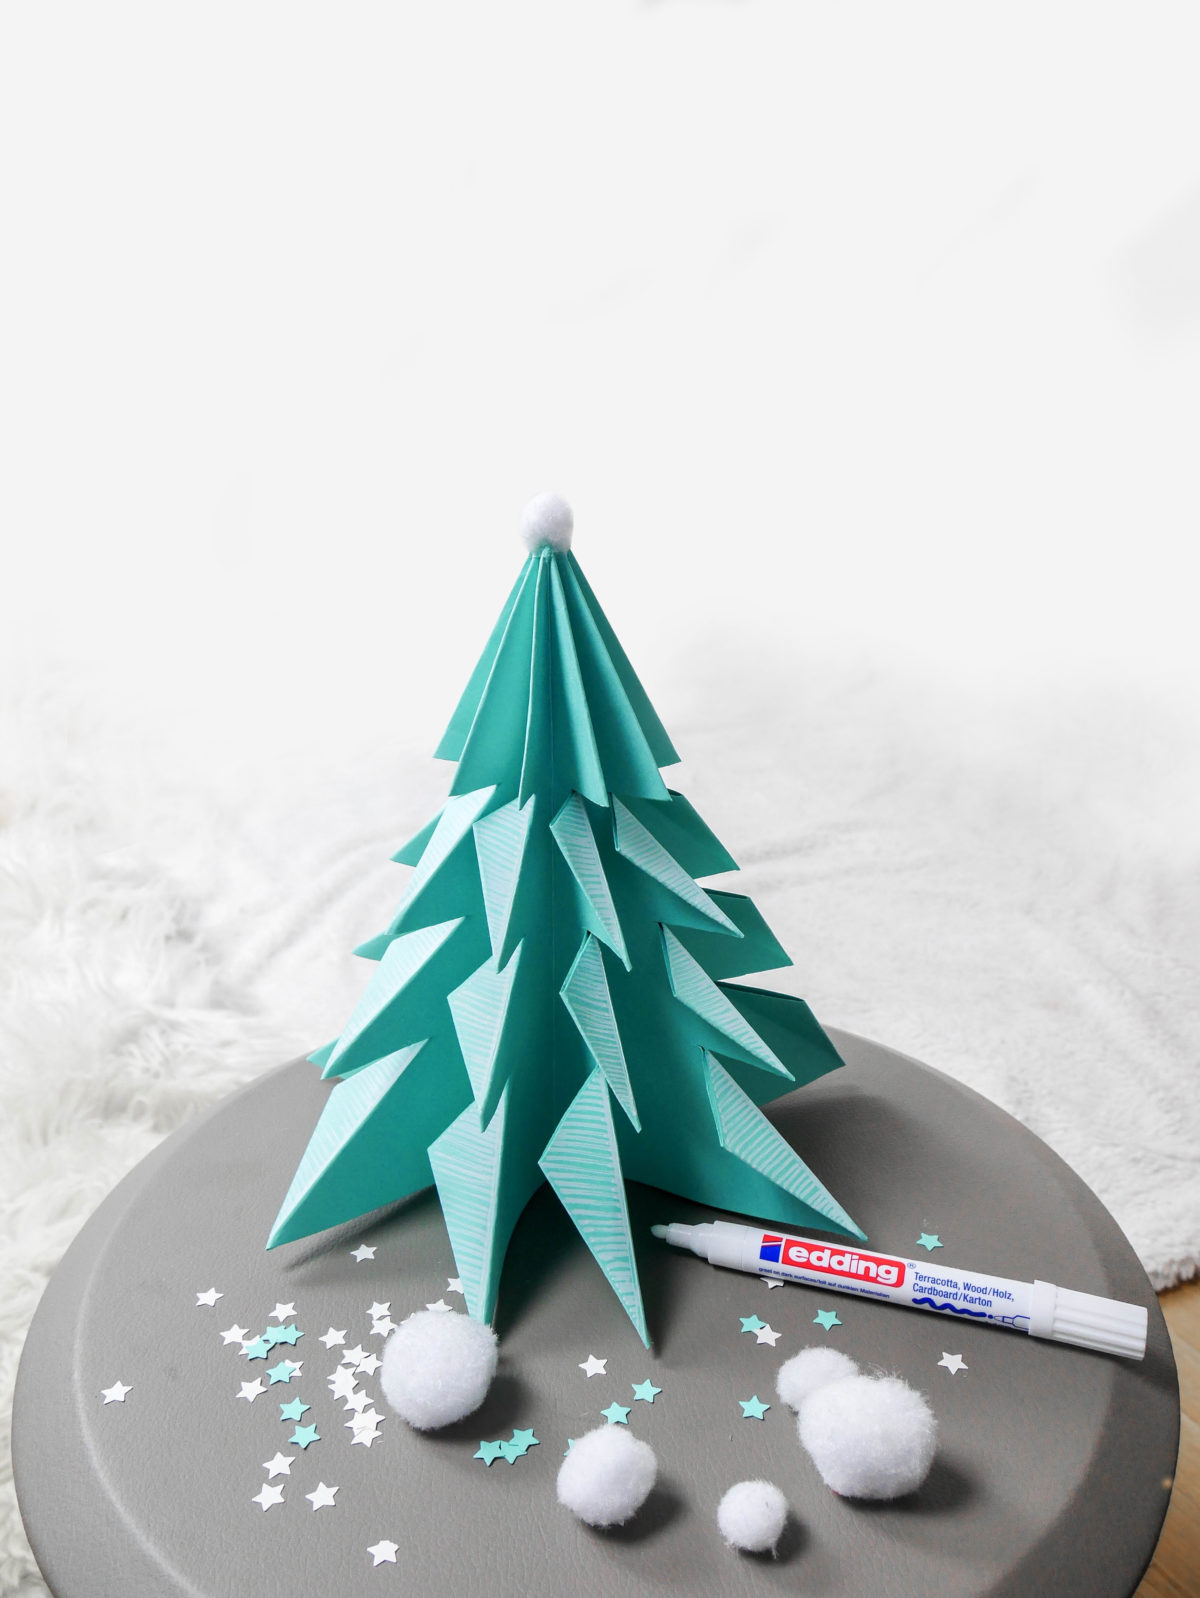 fabriquer sapin de Noël en papier pliage facile pour enfant décoration hygge slow life ecologique - blog déco - clem around the corner